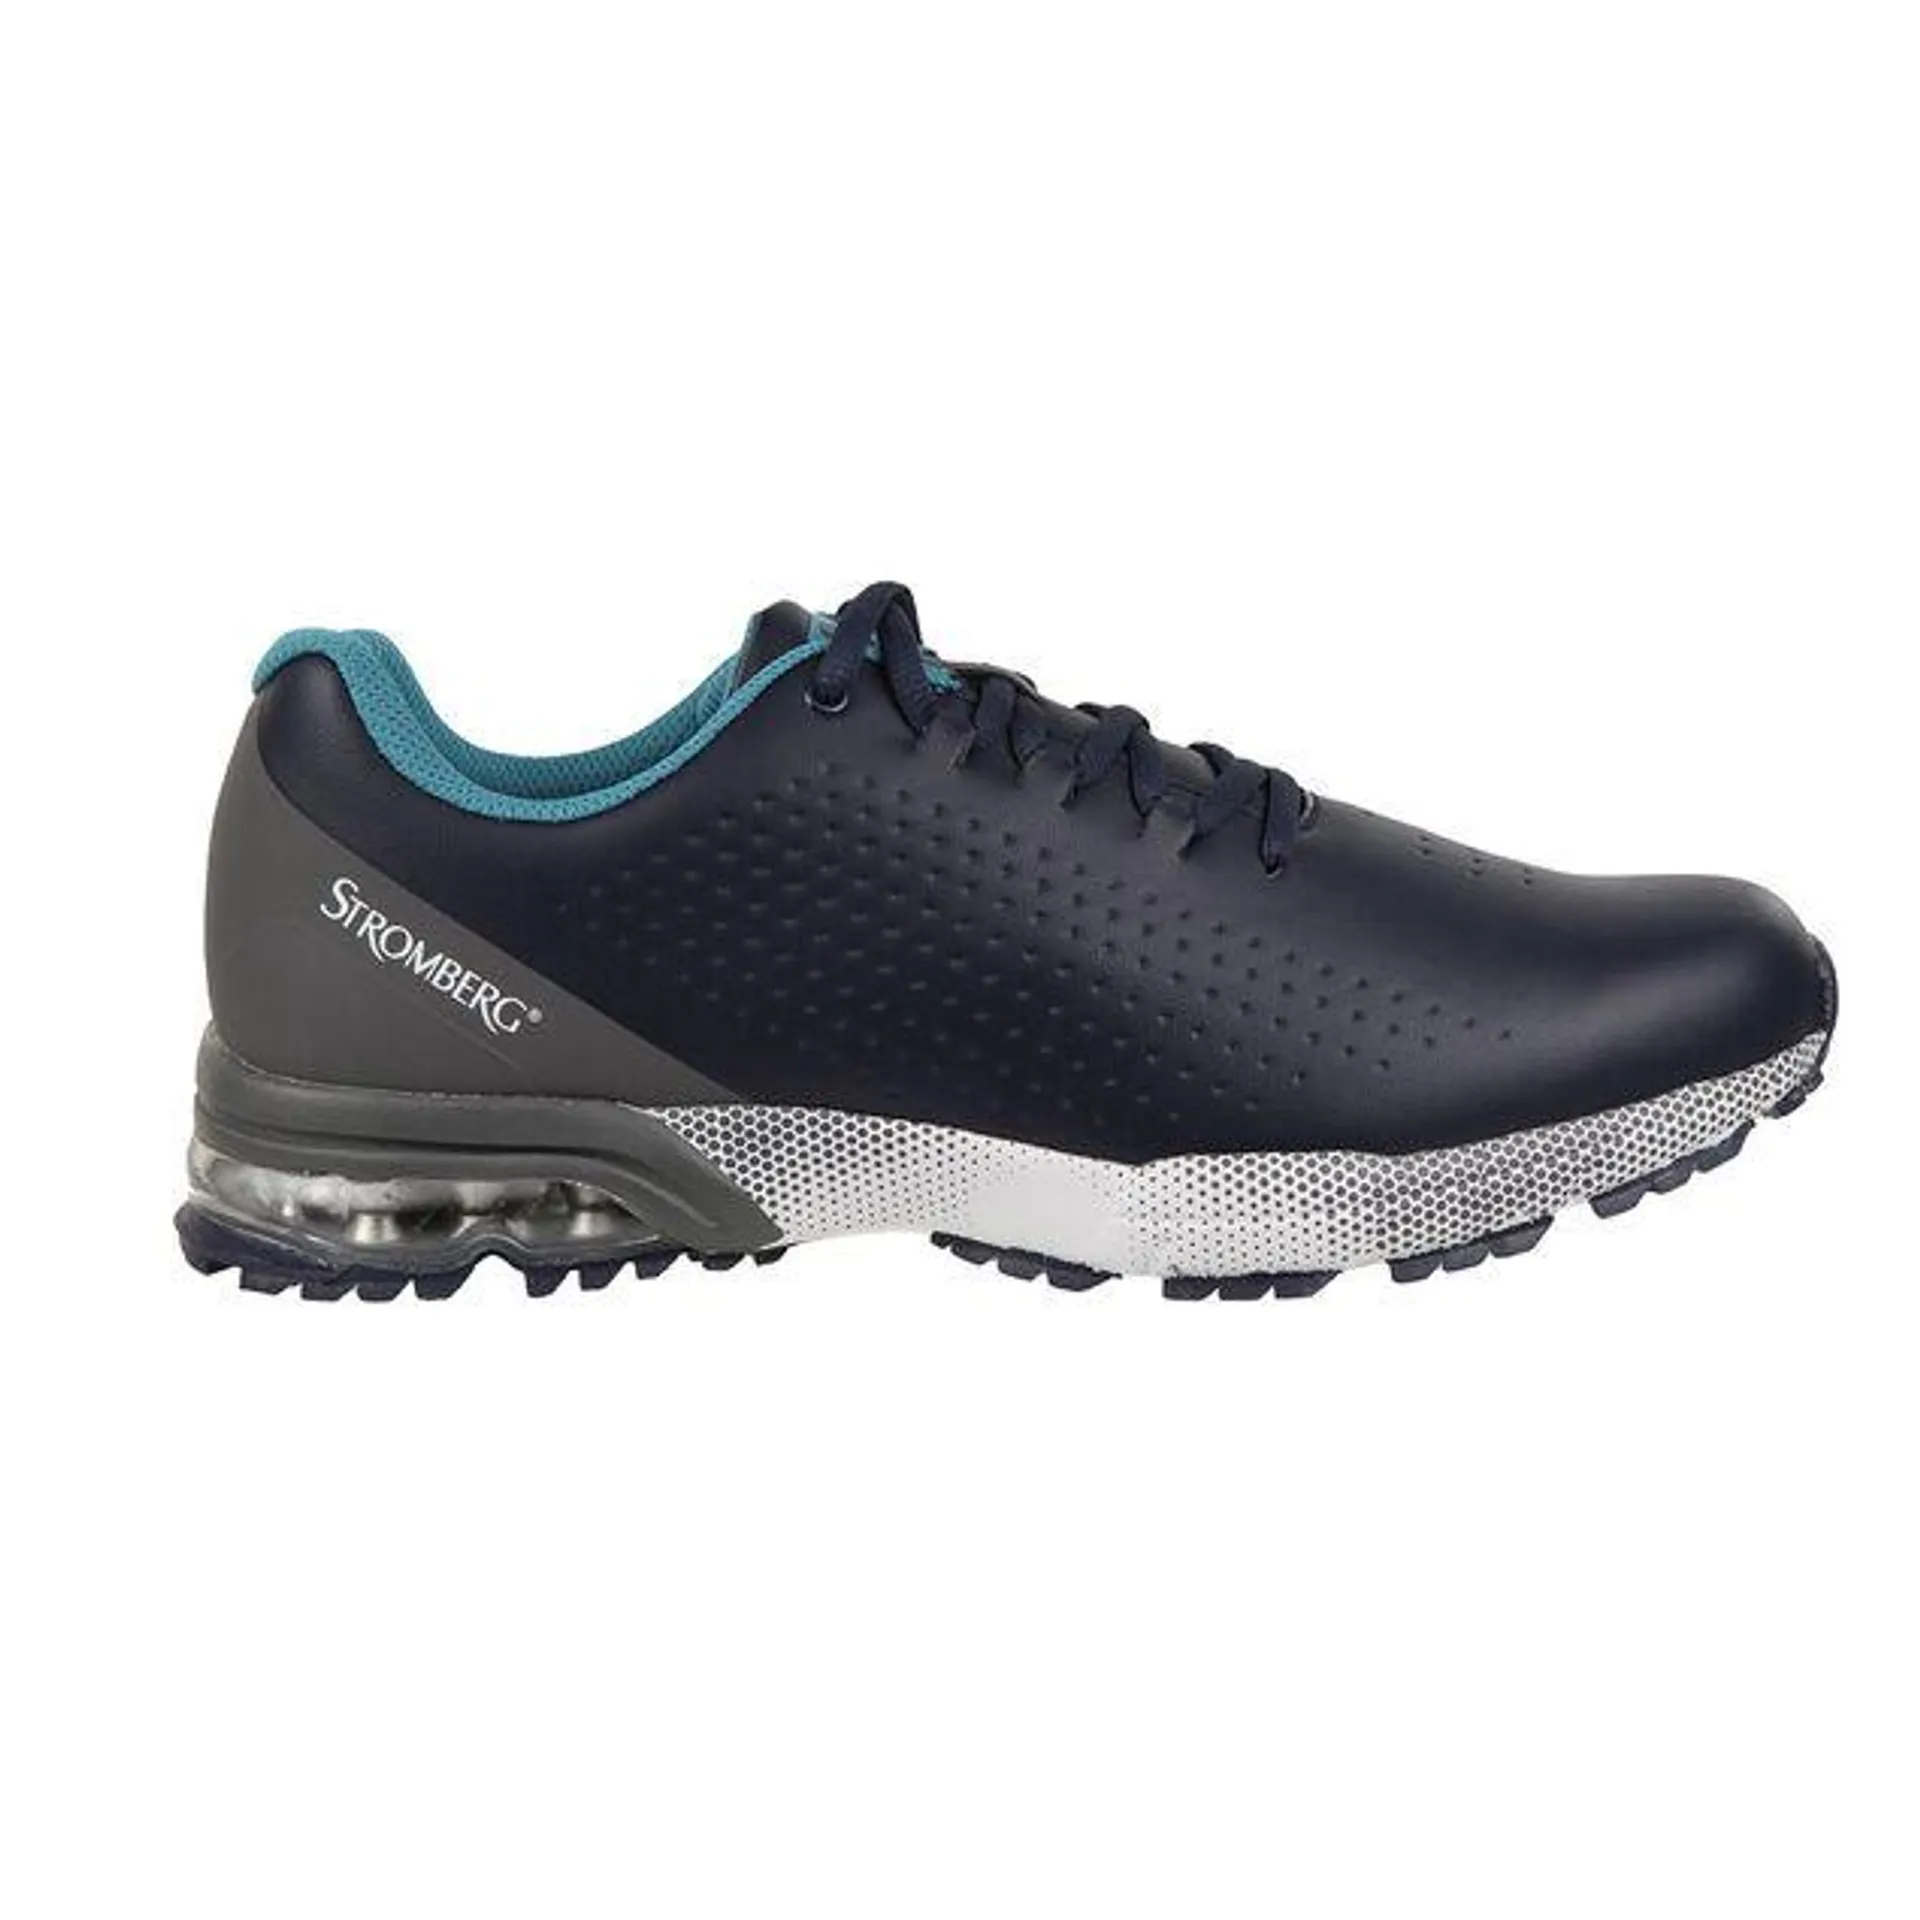 Stromberg Men's Ailsa Waterproof Spikeless Golf Shoes